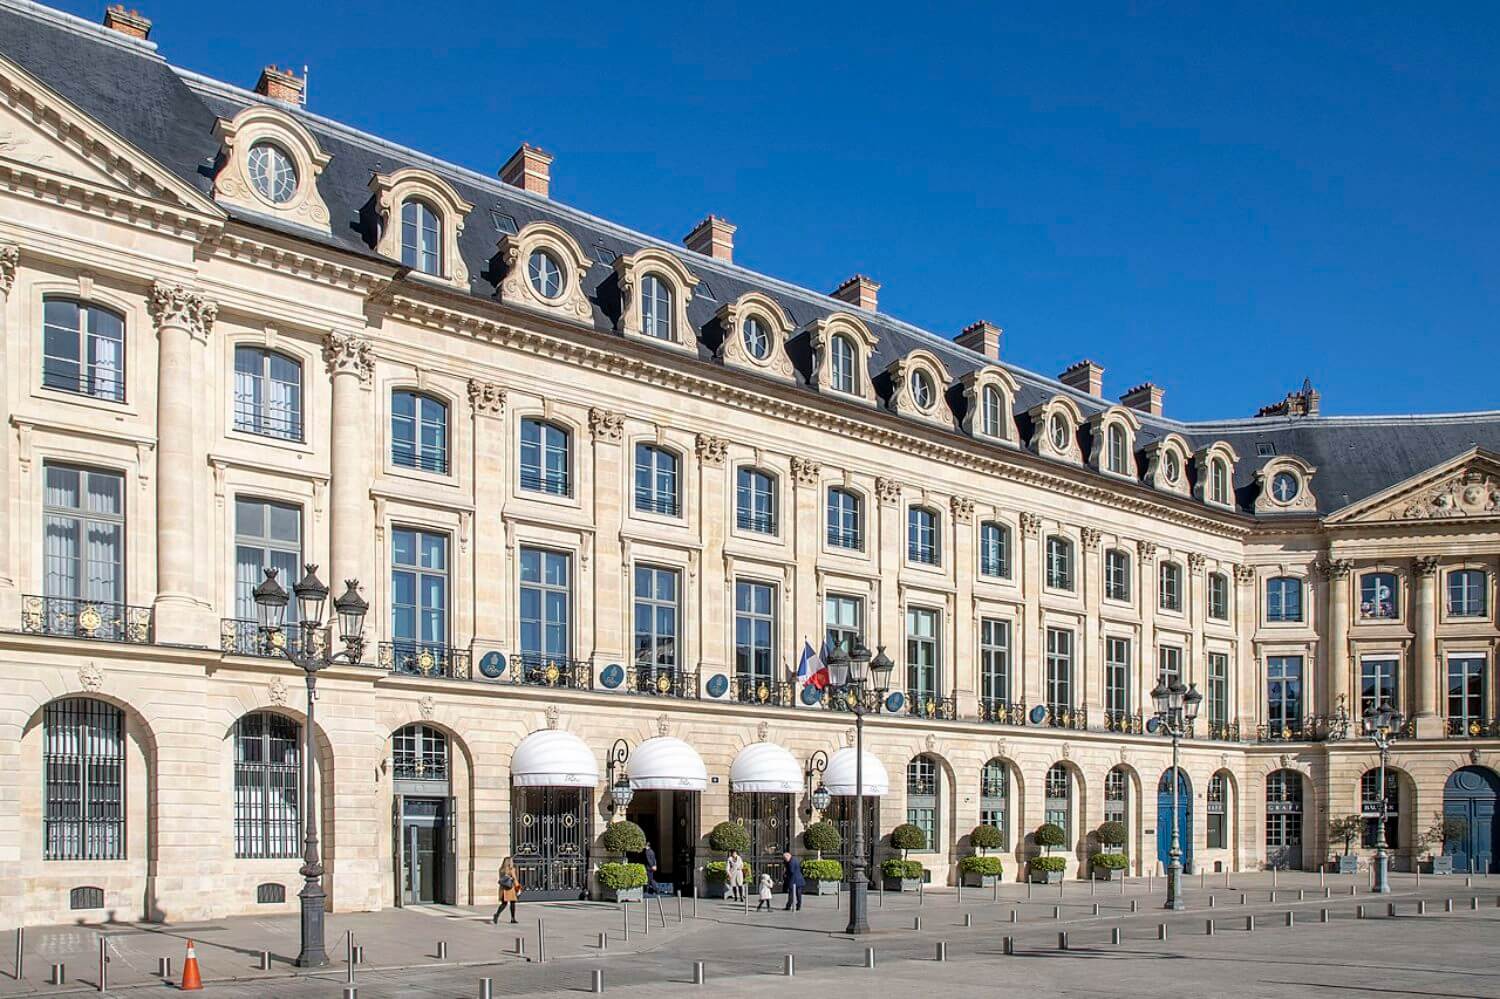 Ritz Paris - Photo Wikimedia Commons by Arthur Weidmann